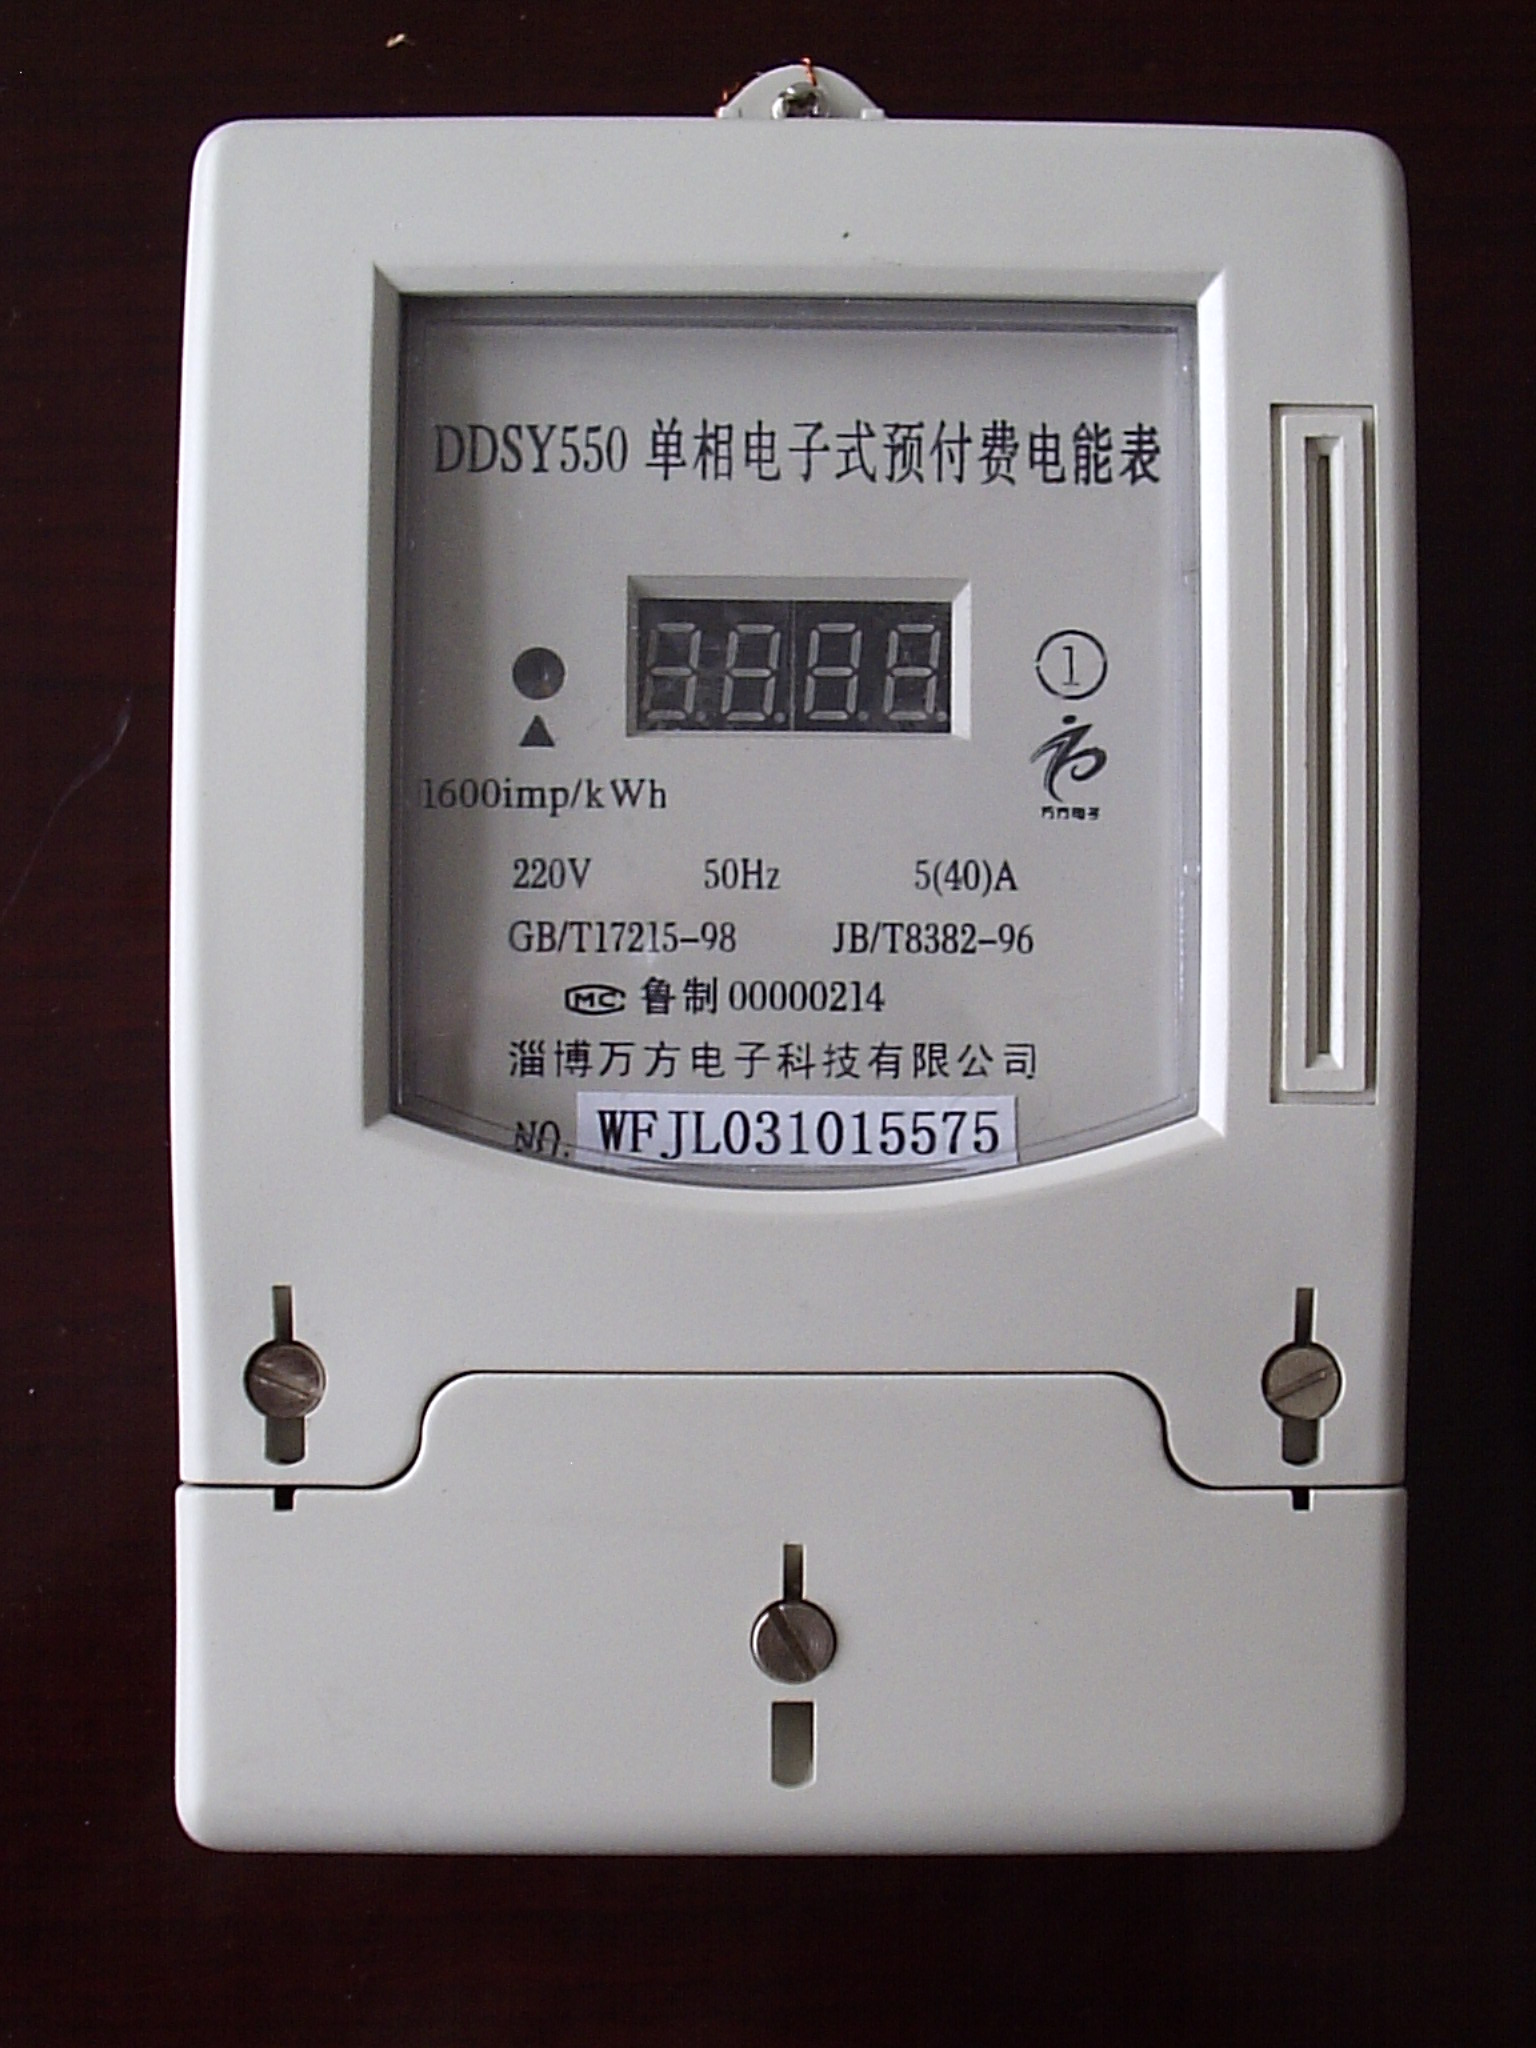 电压高于铭牌上的规定，导致电能表不准吗？